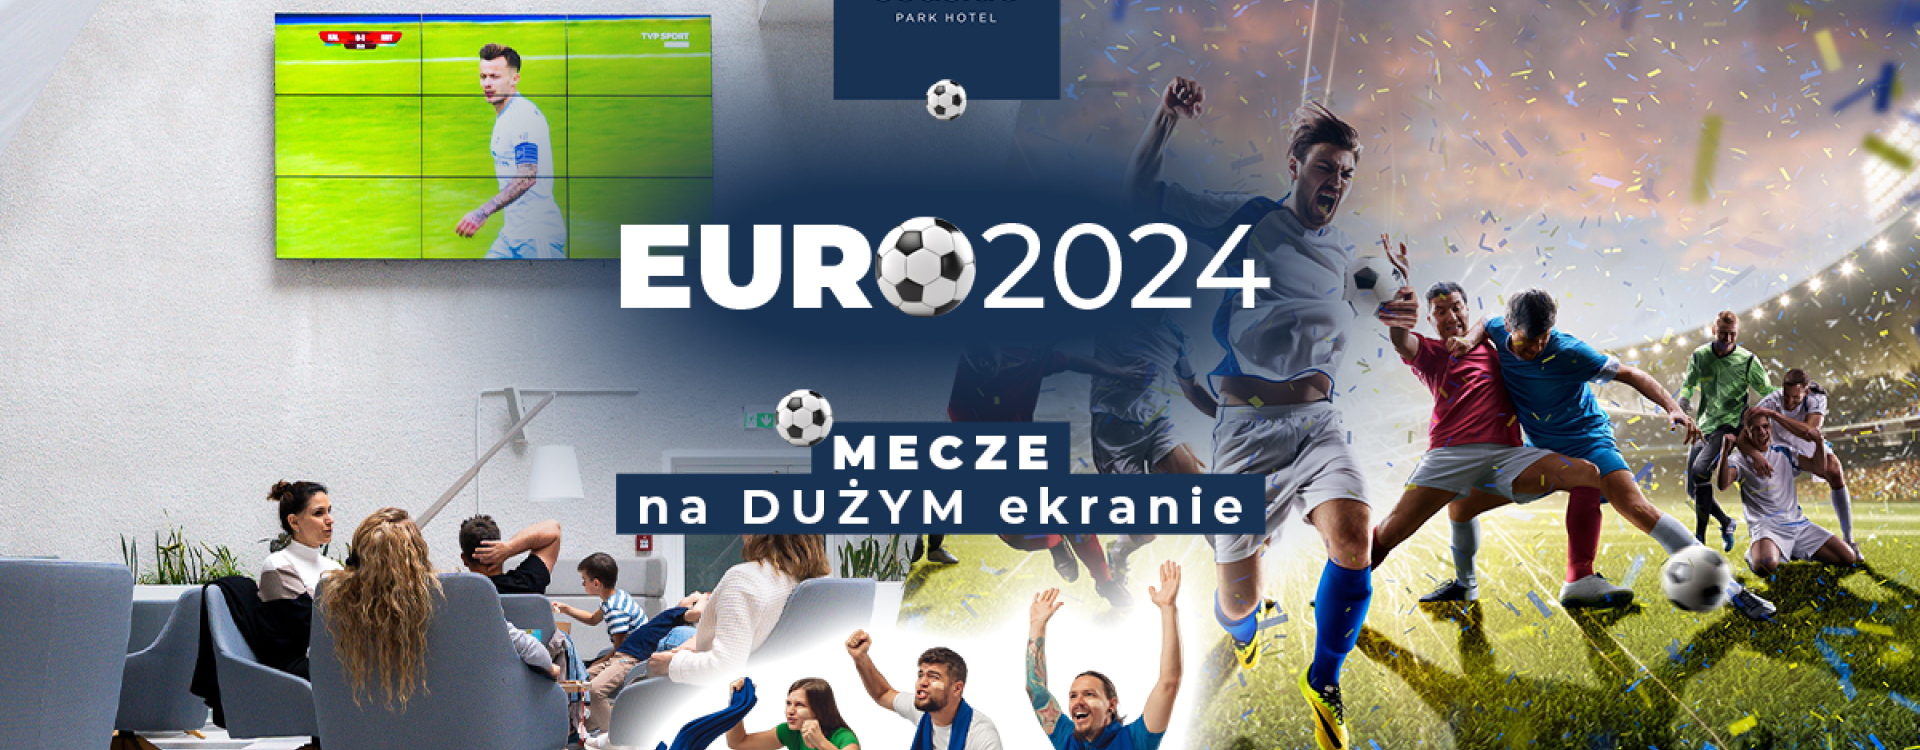 Mecze EURO 2024 na dużym ekranie